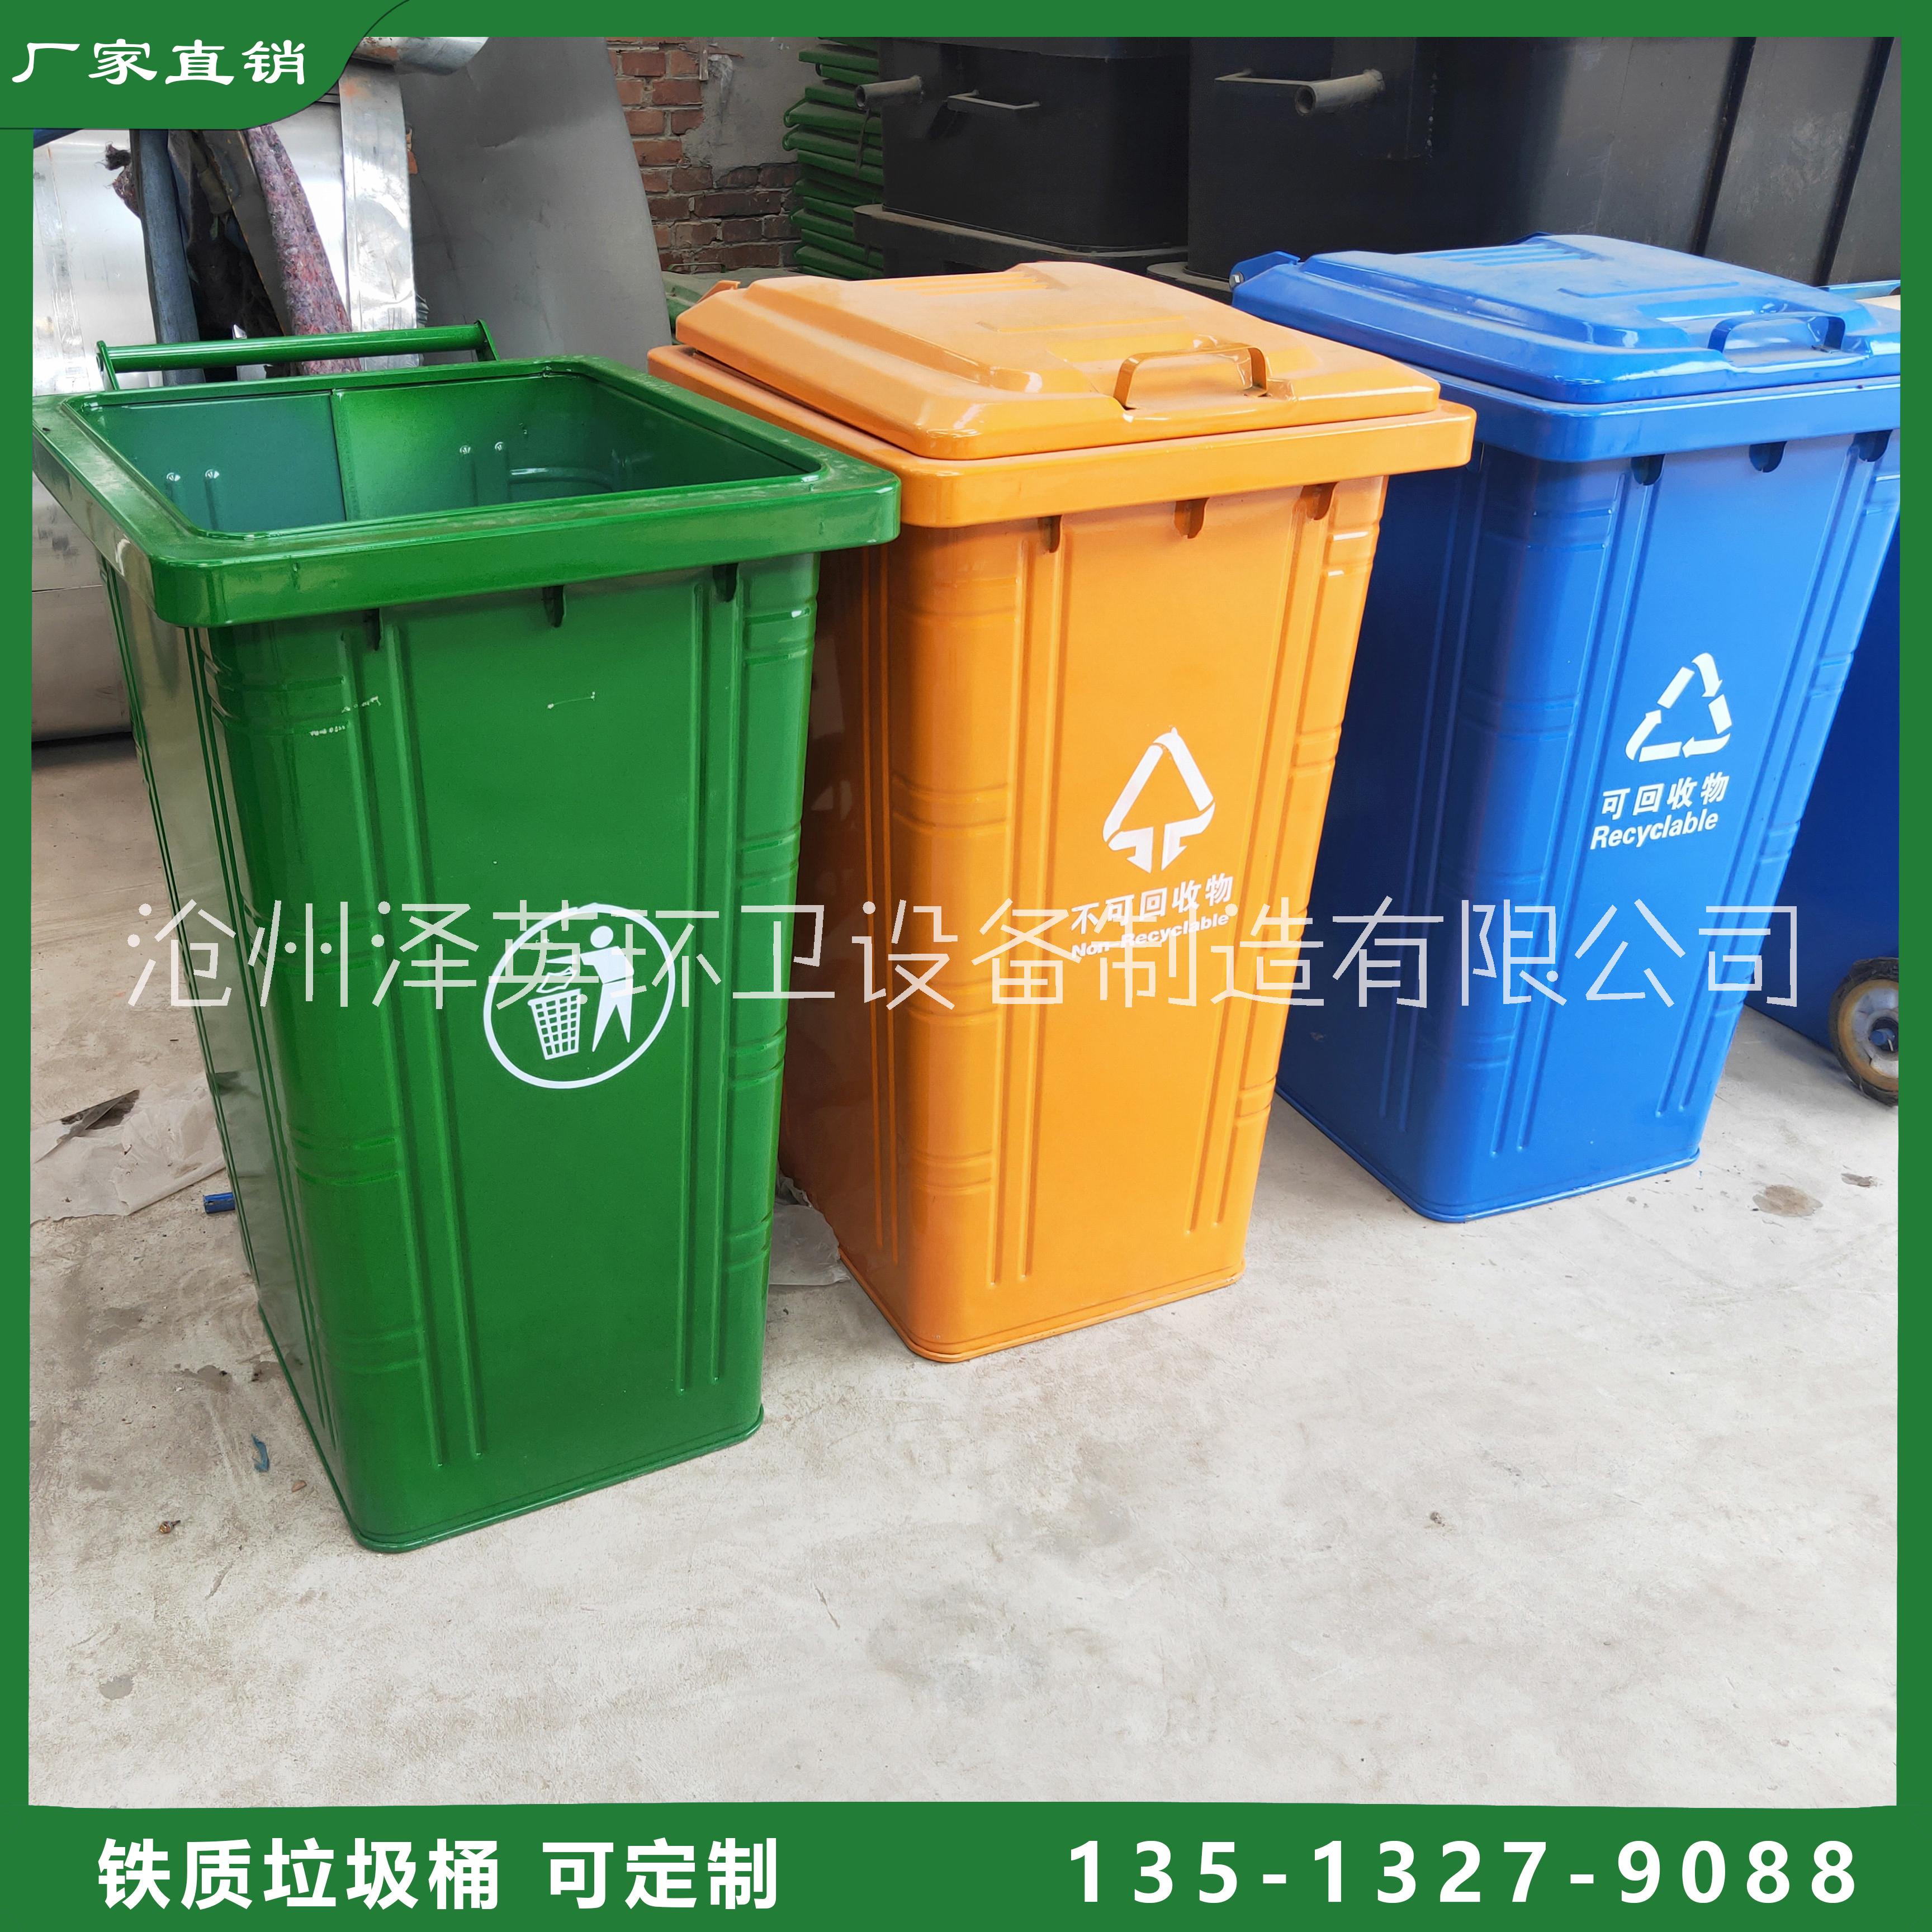 240L铁质垃圾桶 挂车户外垃圾桶 铁质环保垃圾桶批发